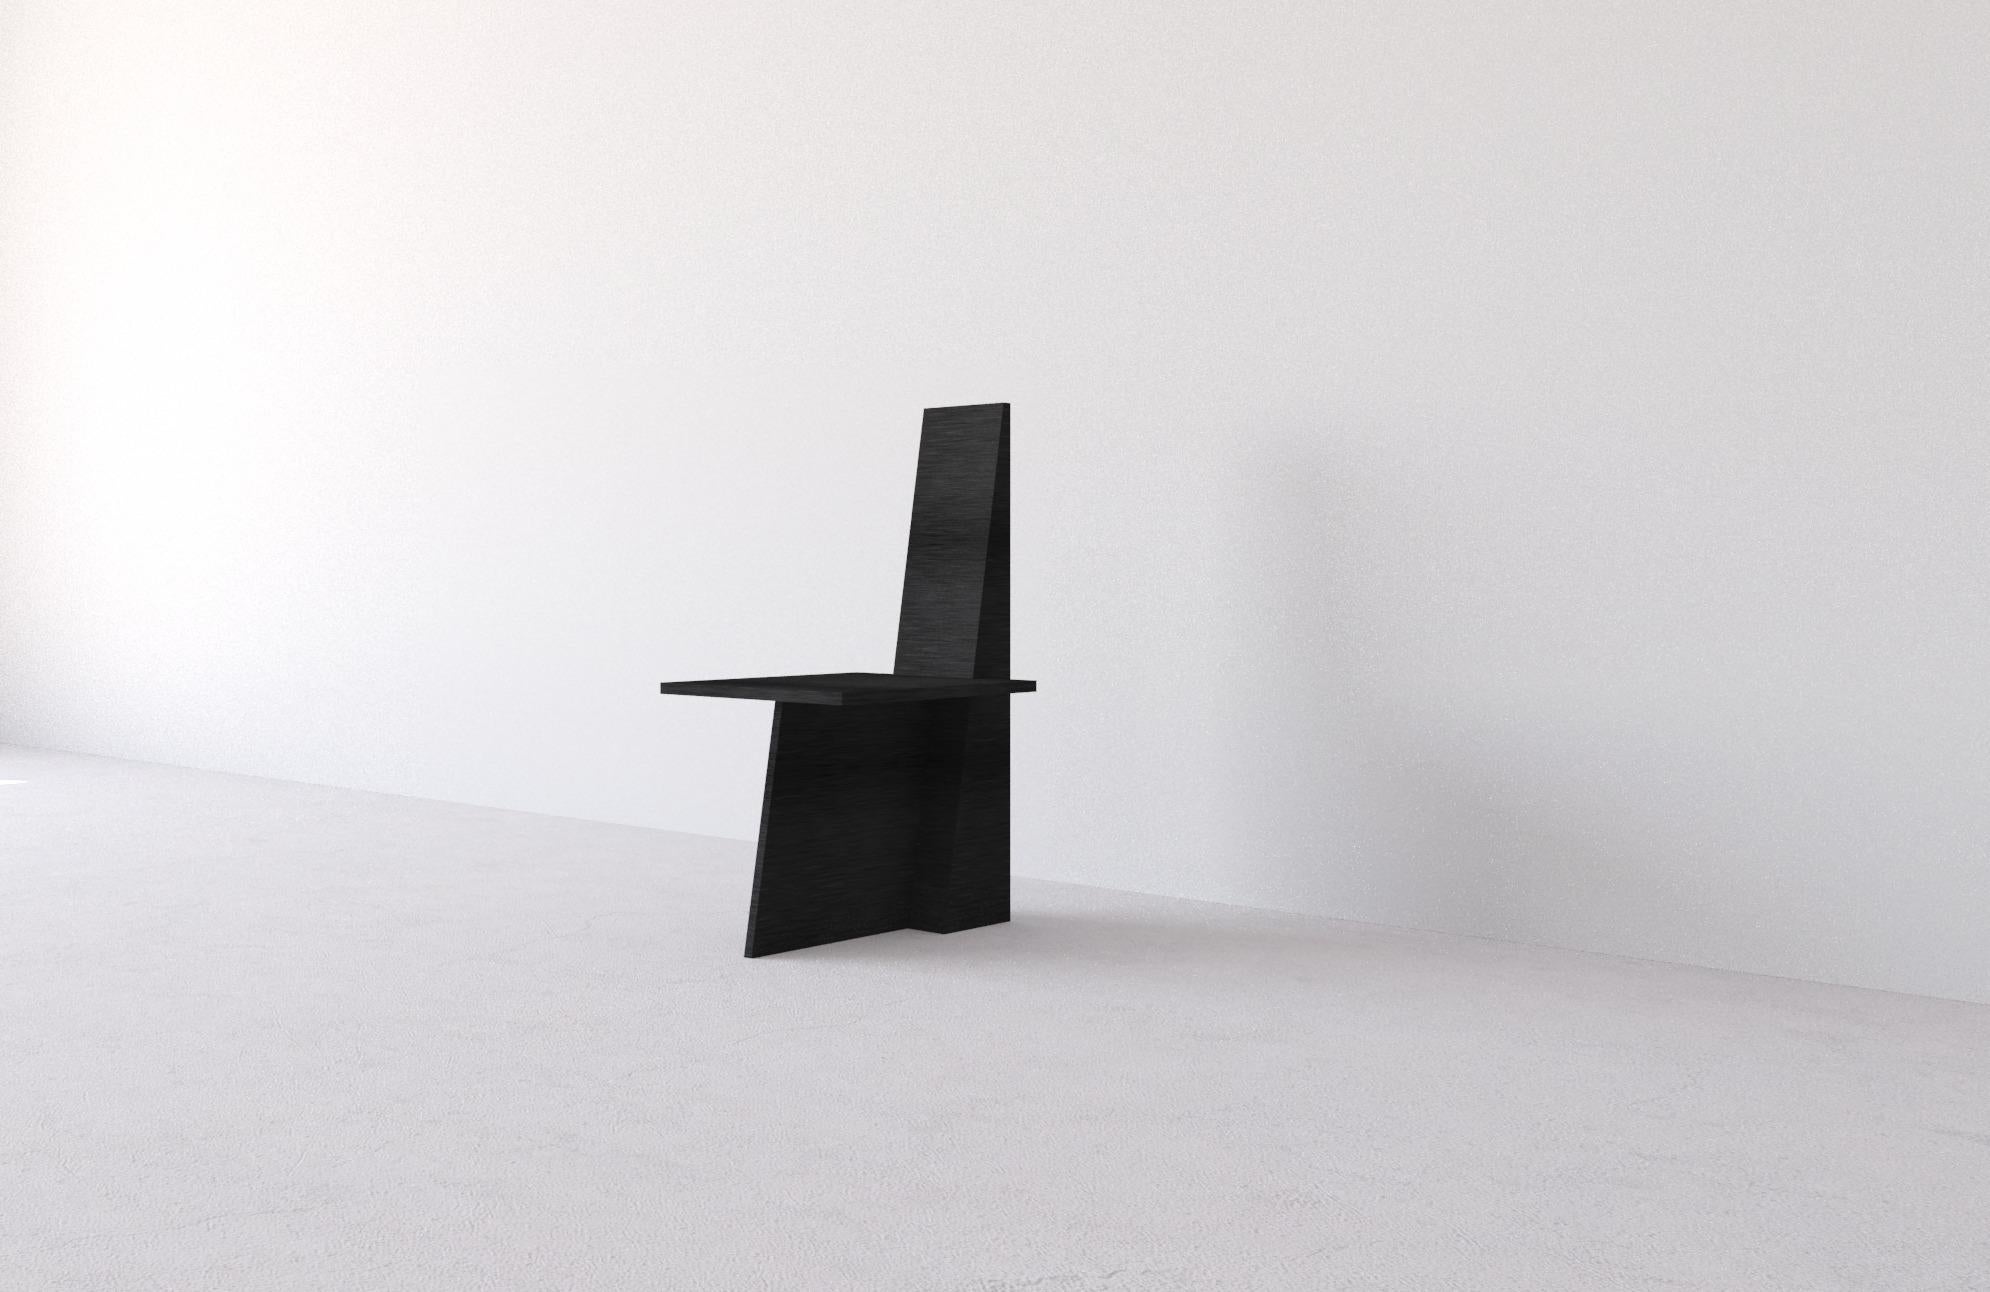 Anchor Stuhl by Morgane Avéus
Abmessungen: T 45 x B 55 x H 95 cm.
MATERIALIEN: Gebeizte Eiche.

Der Stuhl Anchor hat eine sehr grafische Ausstrahlung, die schlanke Linien und starke Winkel kombiniert.
Er eignet sich gut als Akzentstuhl und kann